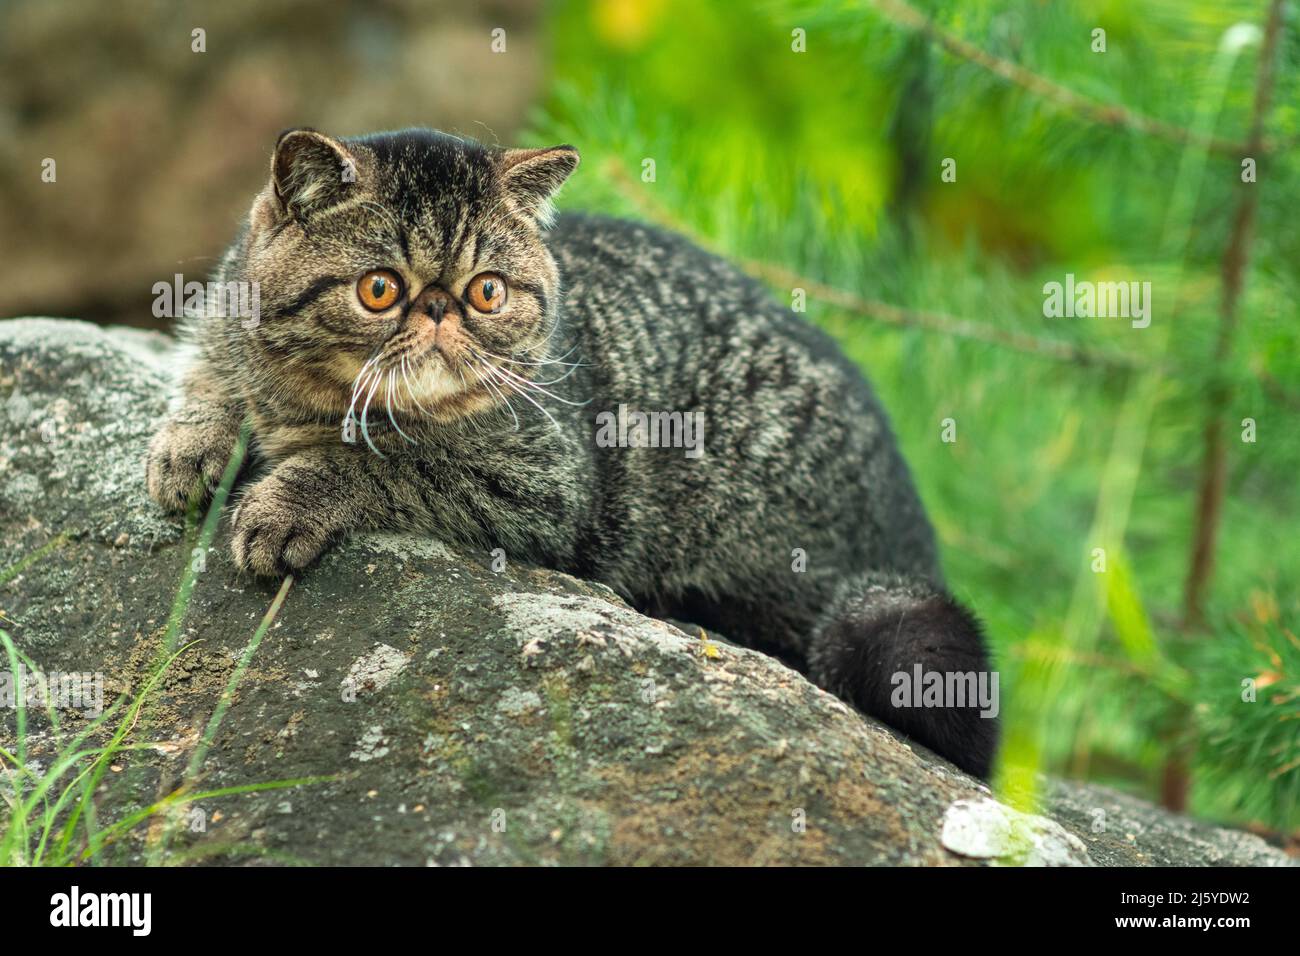 Un joli chat de tabby marron est assis exotiquement sur une grande pierre grise dans le parc pendant une journée d'été.Le chaton persan a peur de voyager à l'extérieur et de regarder Banque D'Images